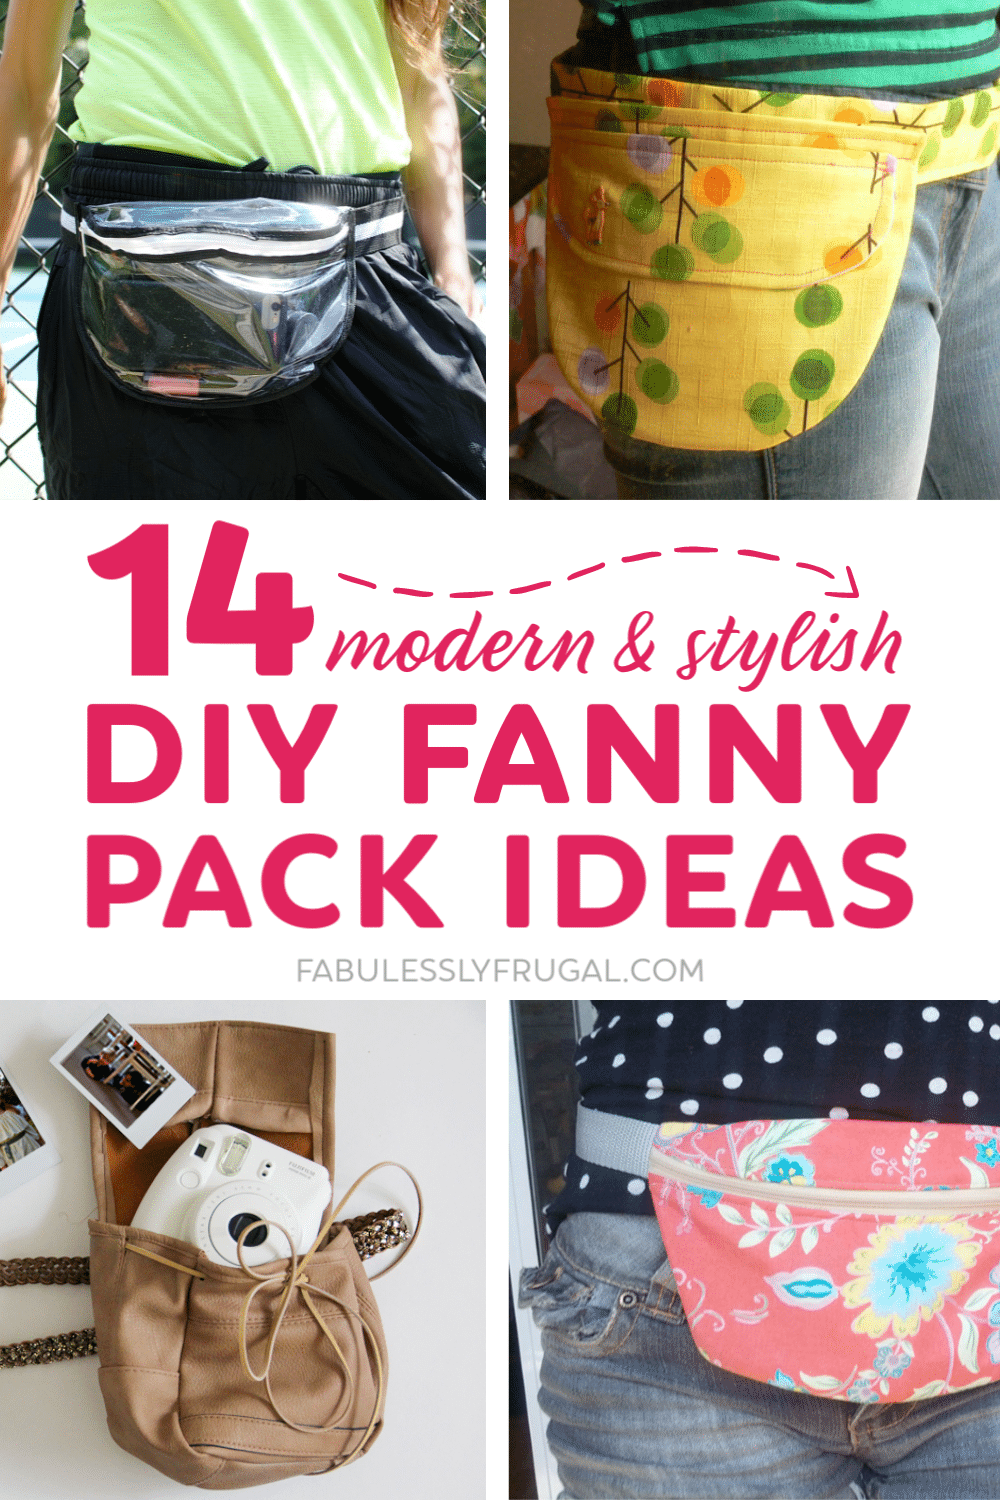 DIY fanny pack ideas